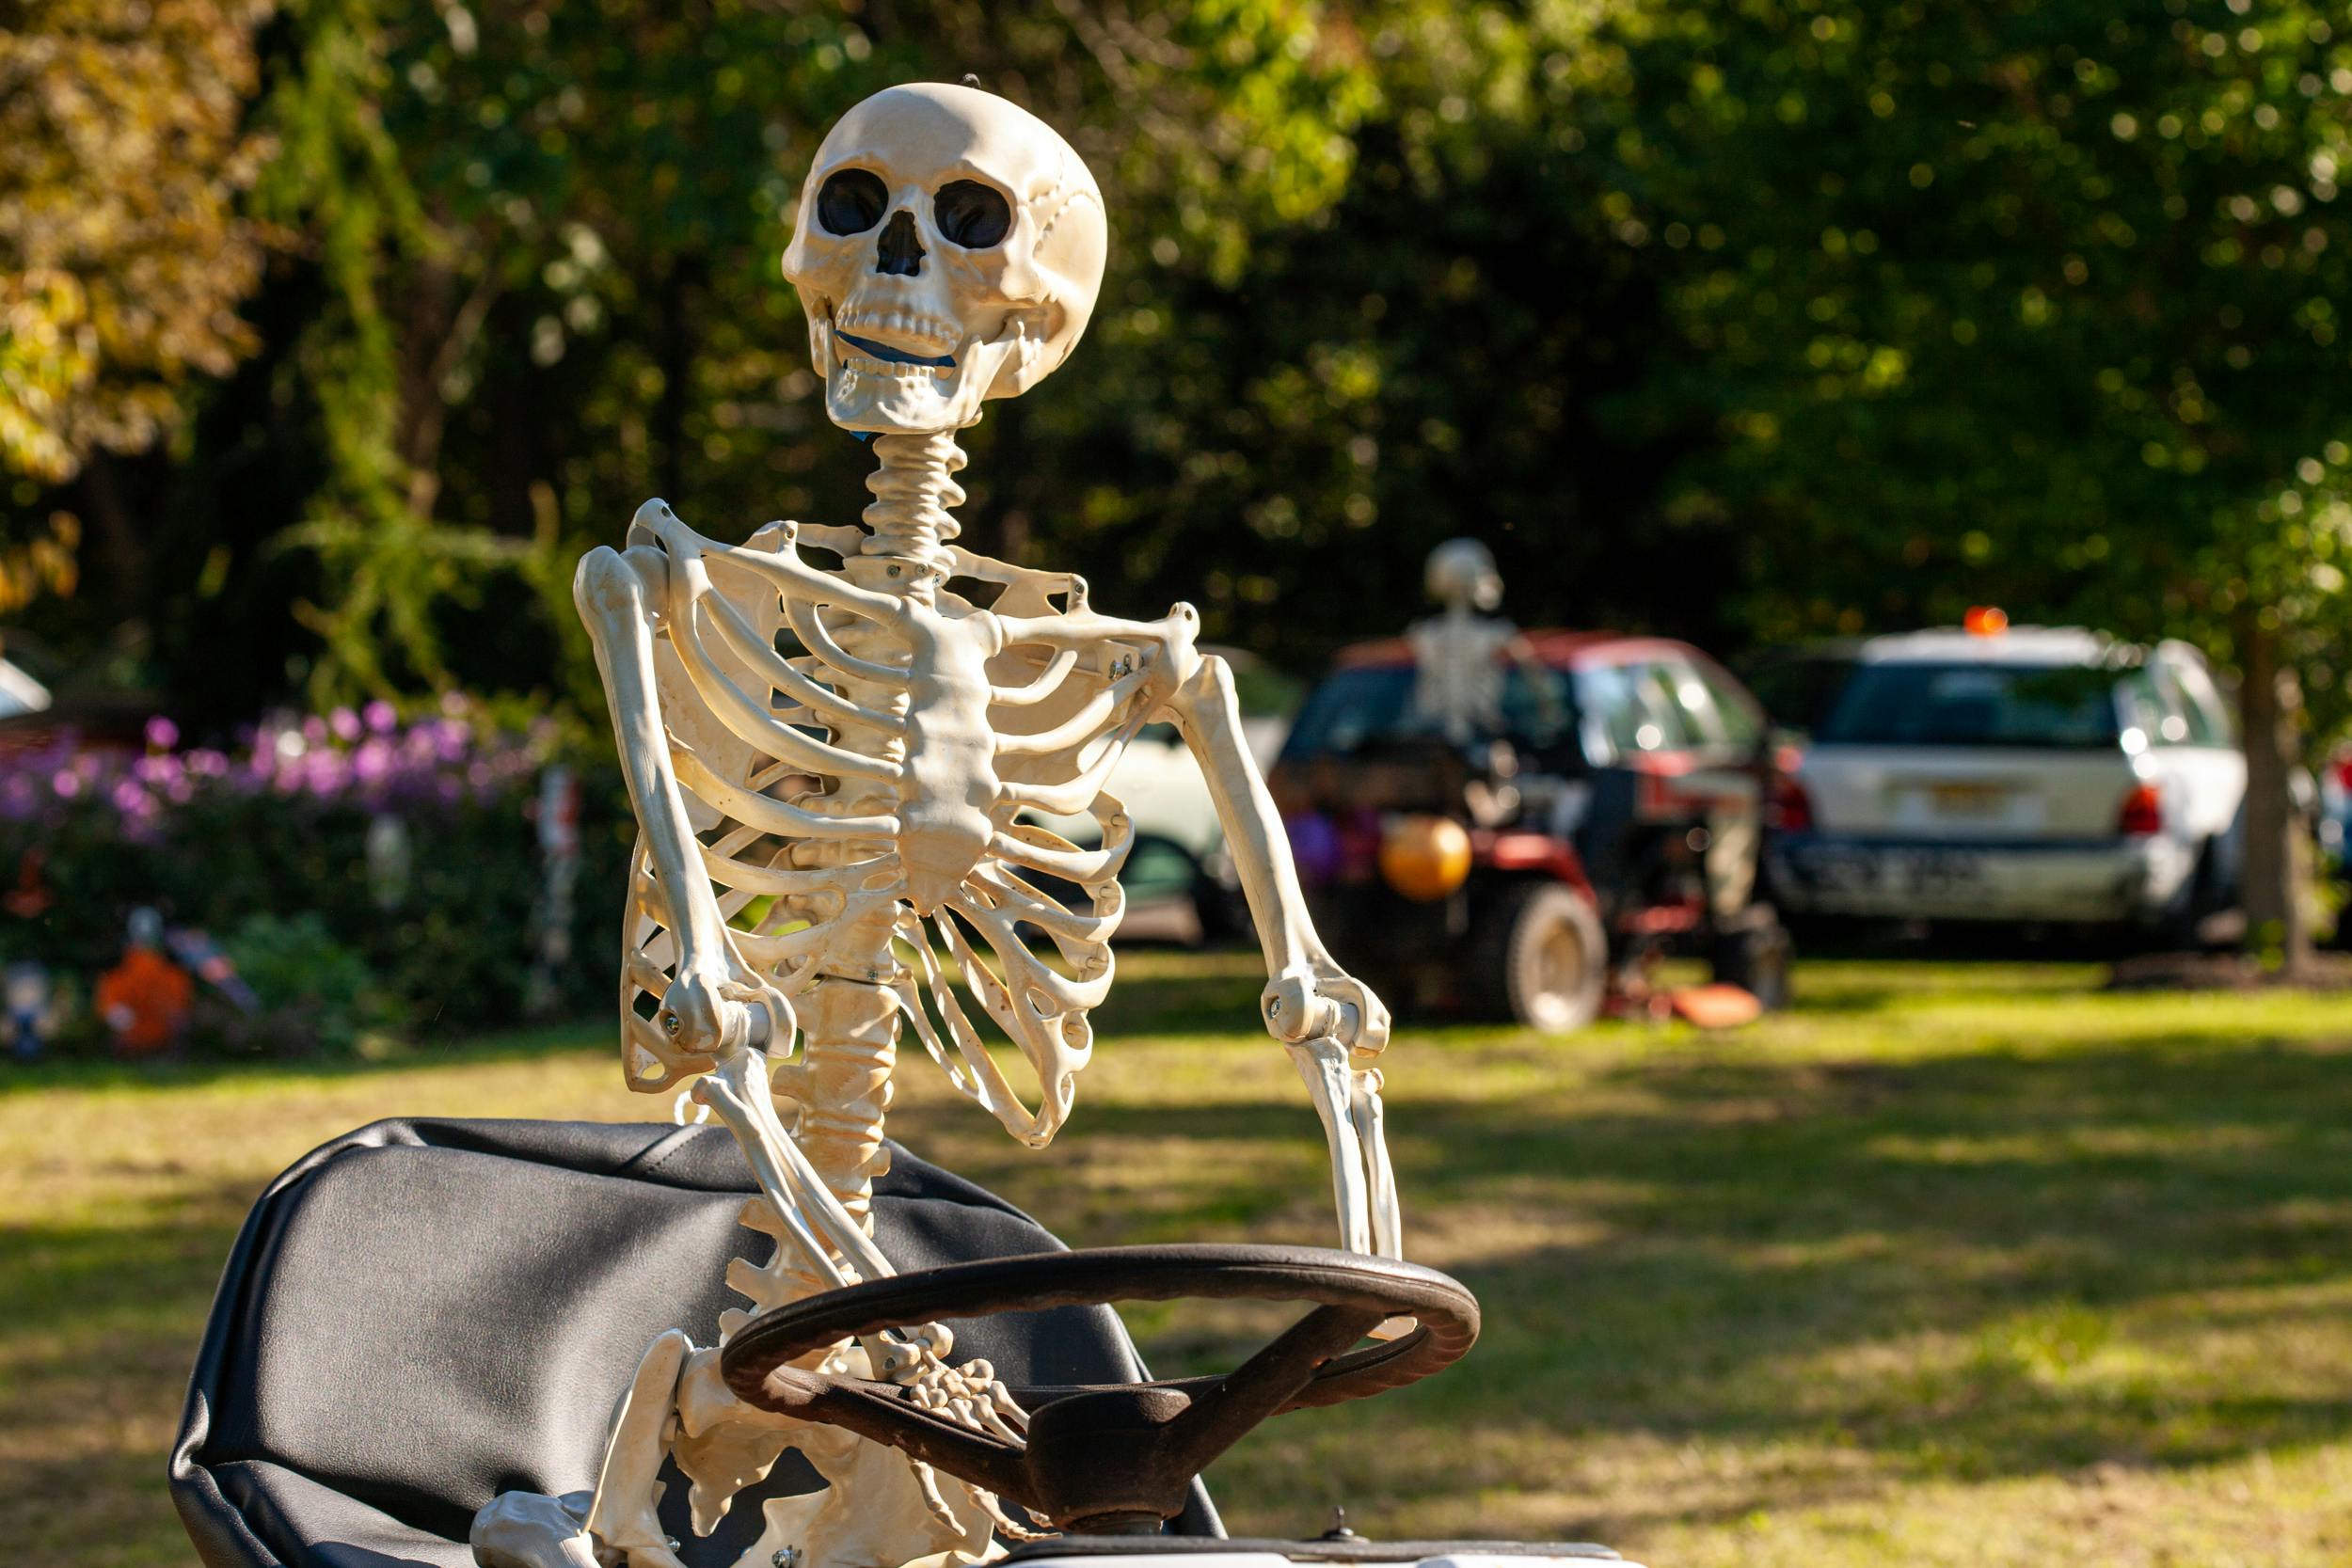 skeleton bones on riding lawn mower close